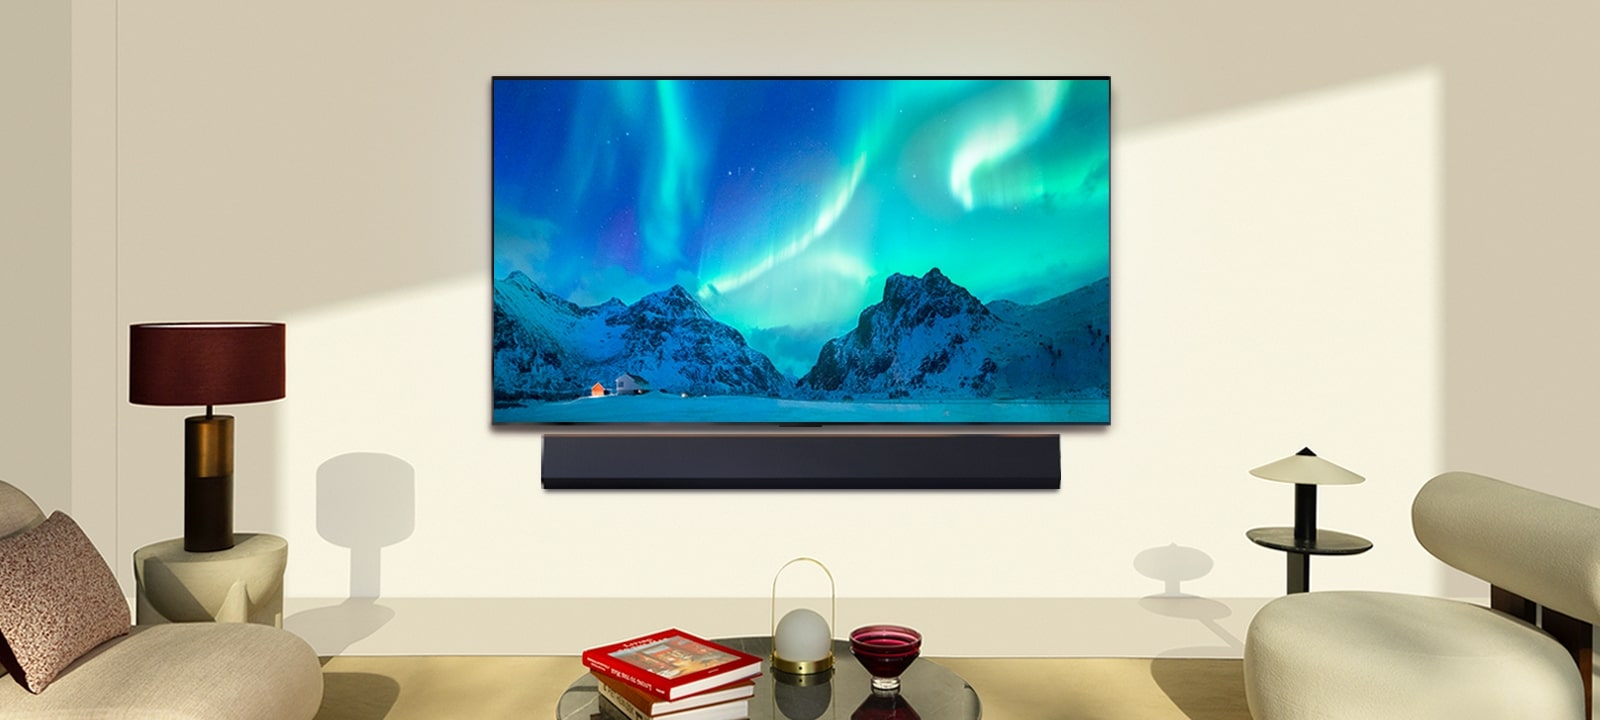 Una imagen de un televisor LG OLED y una barra de sonido LG en un espacio moderno durante el día. La imagen de la aurora boreal se muestra con los niveles de brillo ideales